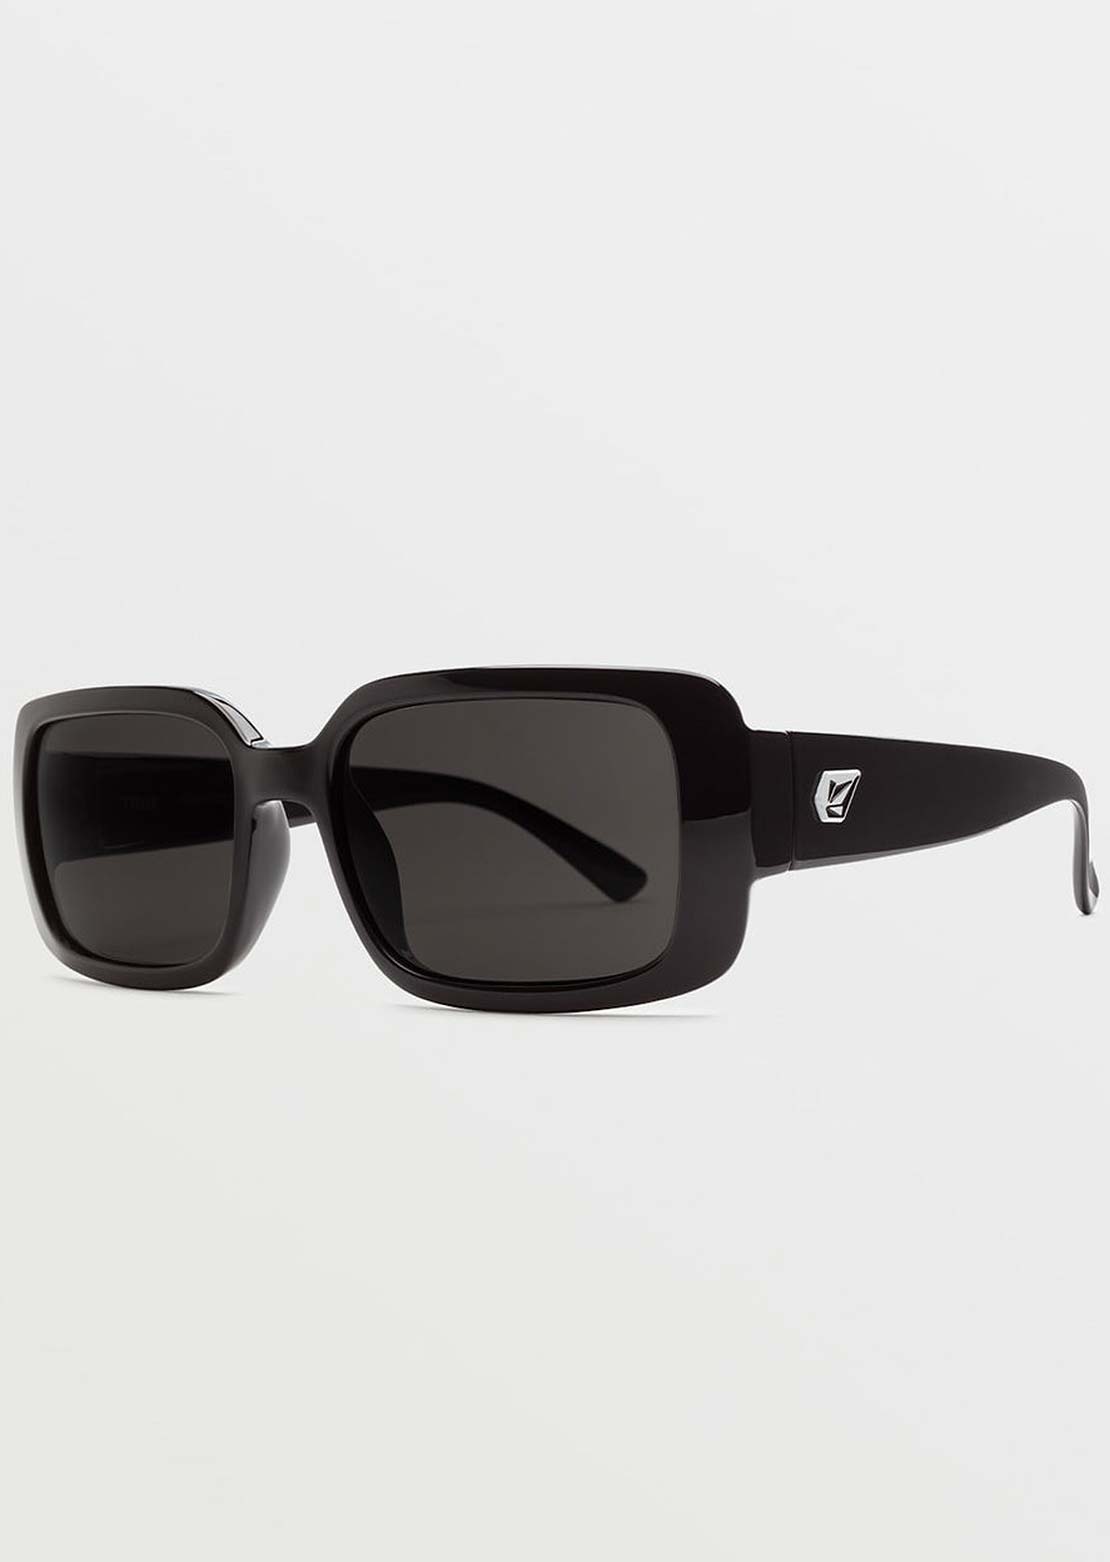 Volcom True Sunglasses Gloss Black/Gray